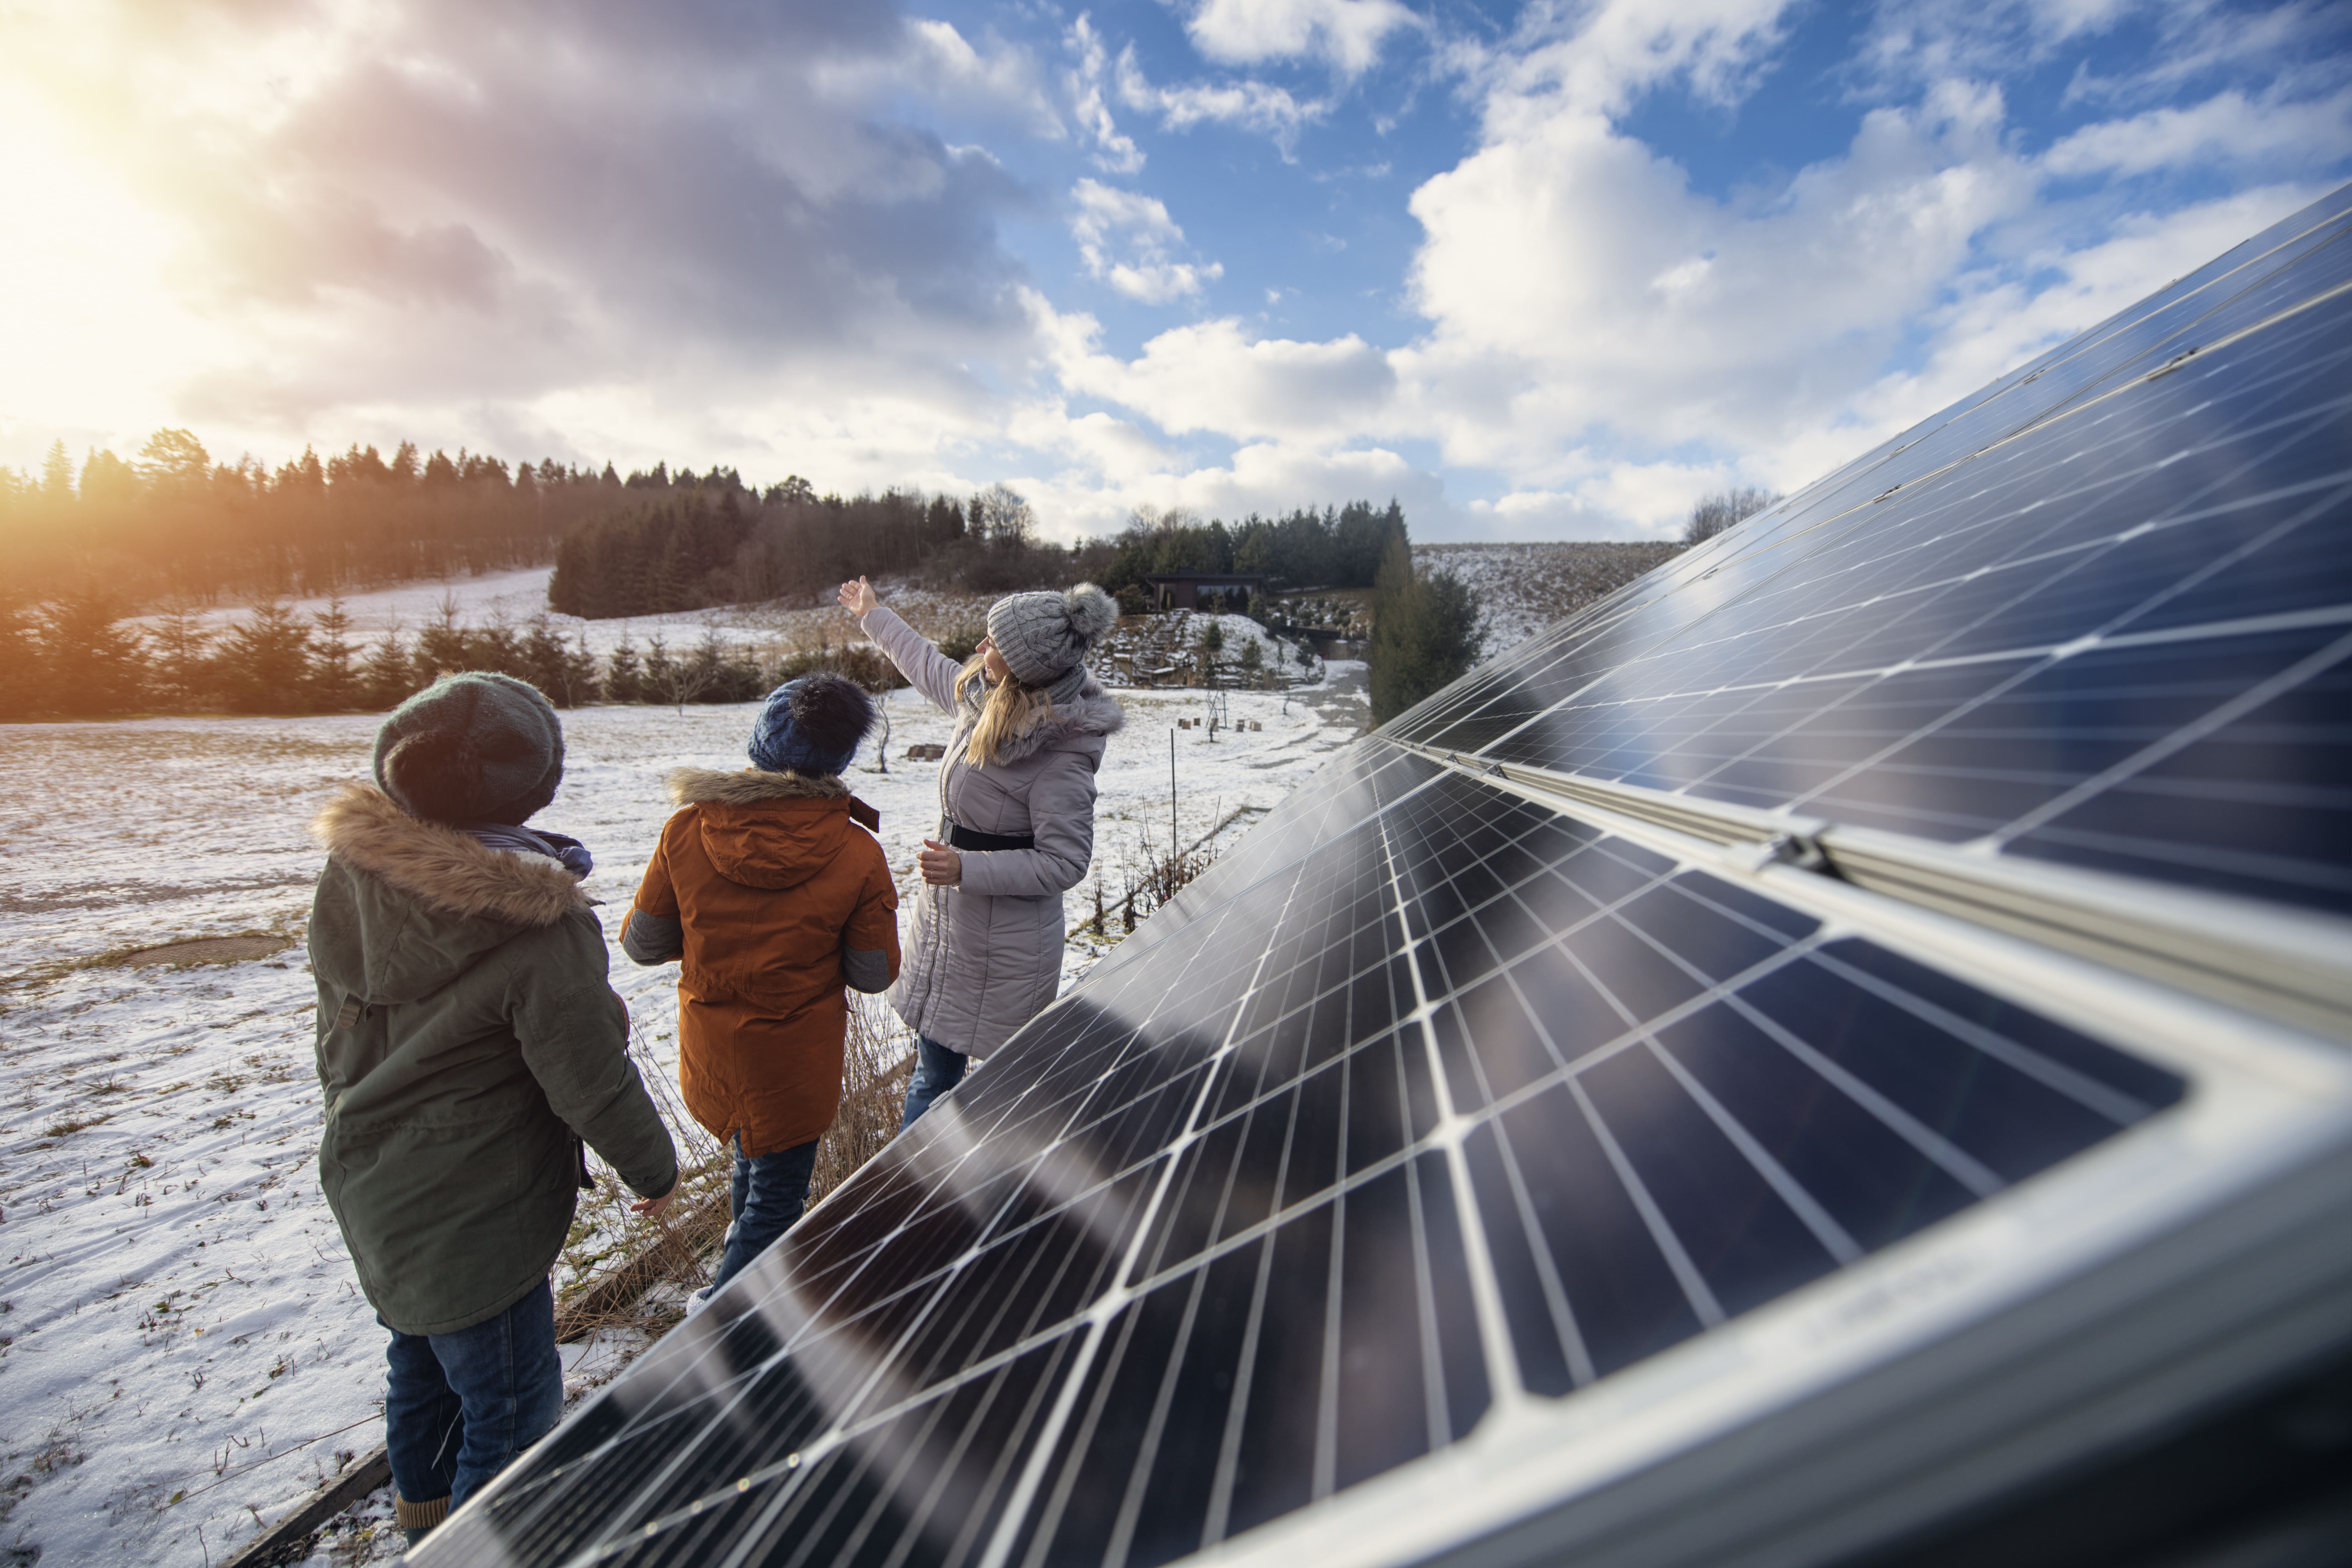 Los paneles solares funcionan en invierno o sin sol?